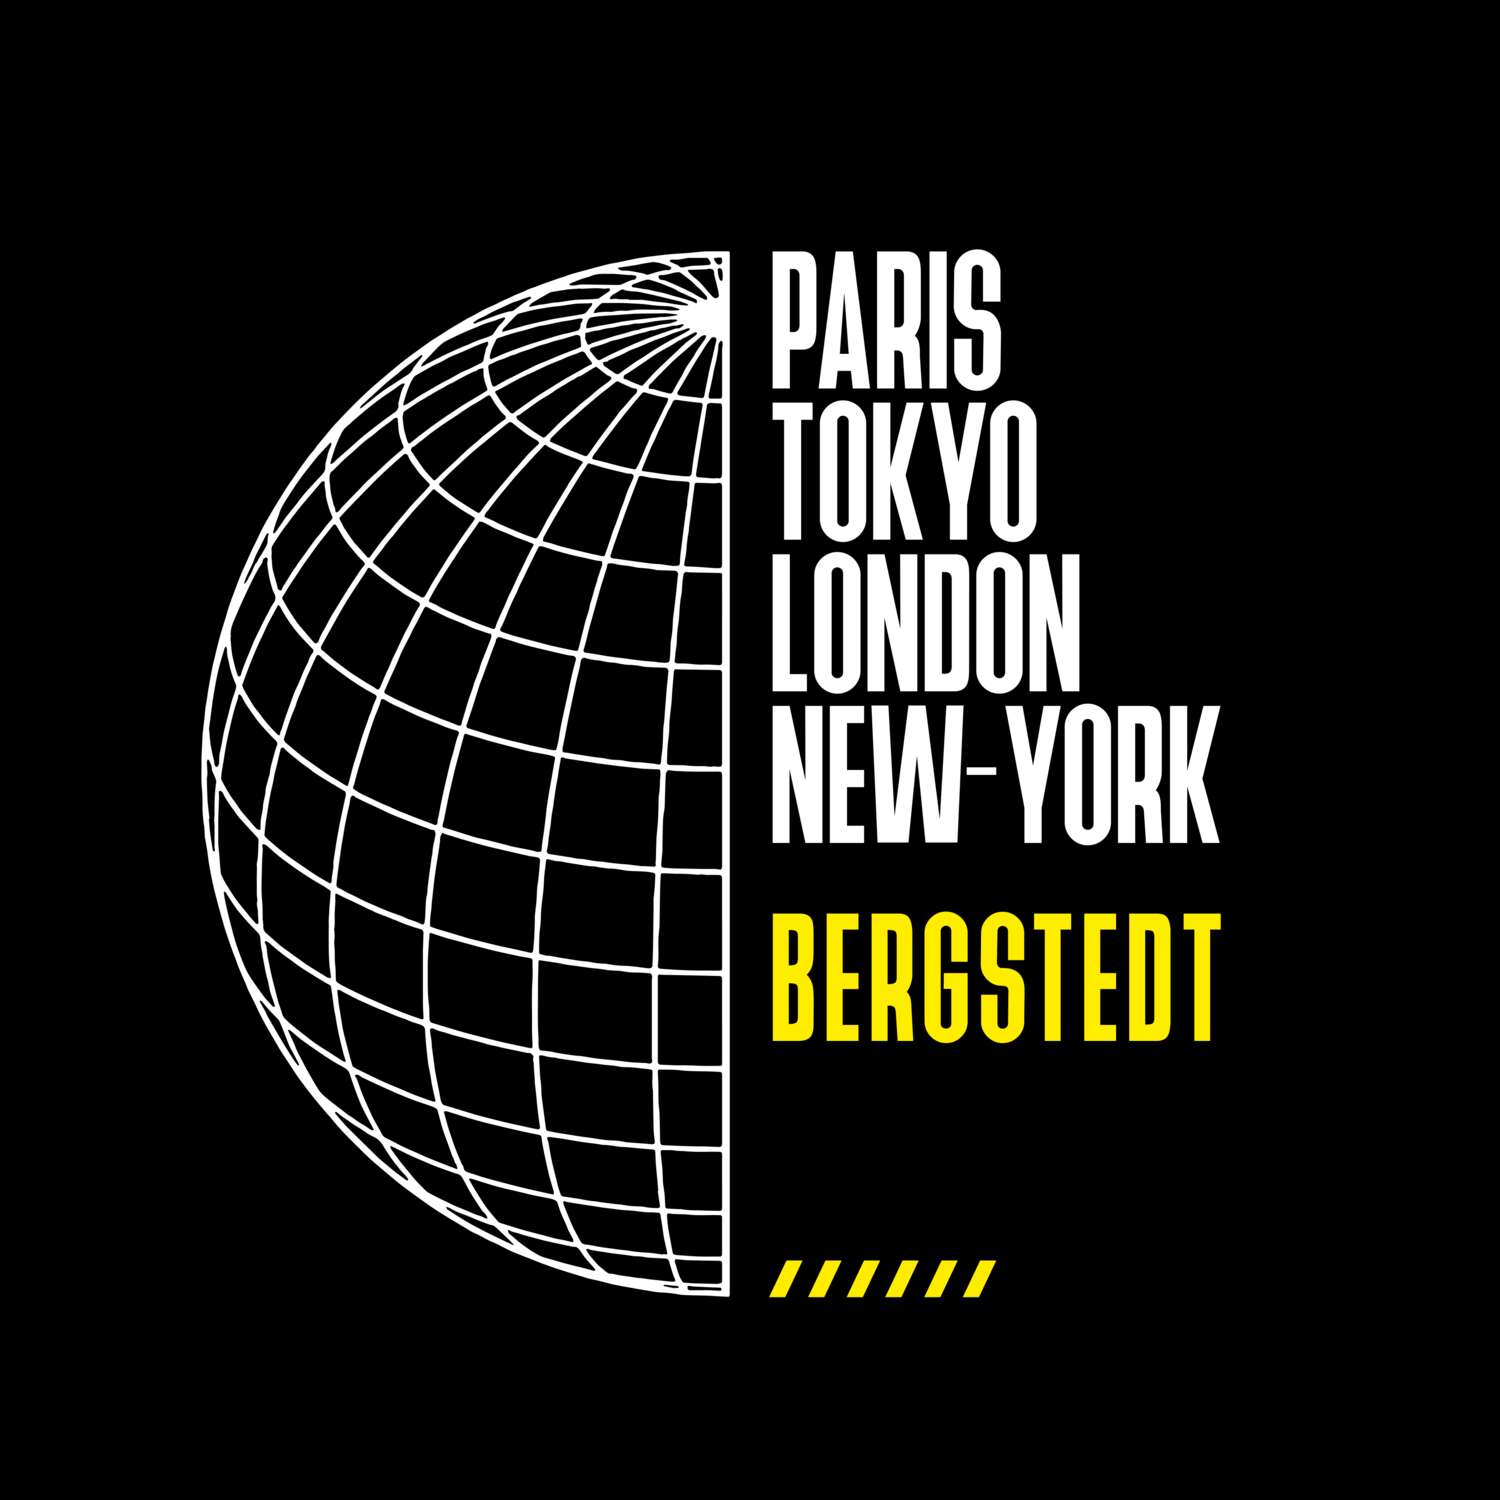 Bergstedt T-Shirt »Paris Tokyo London«